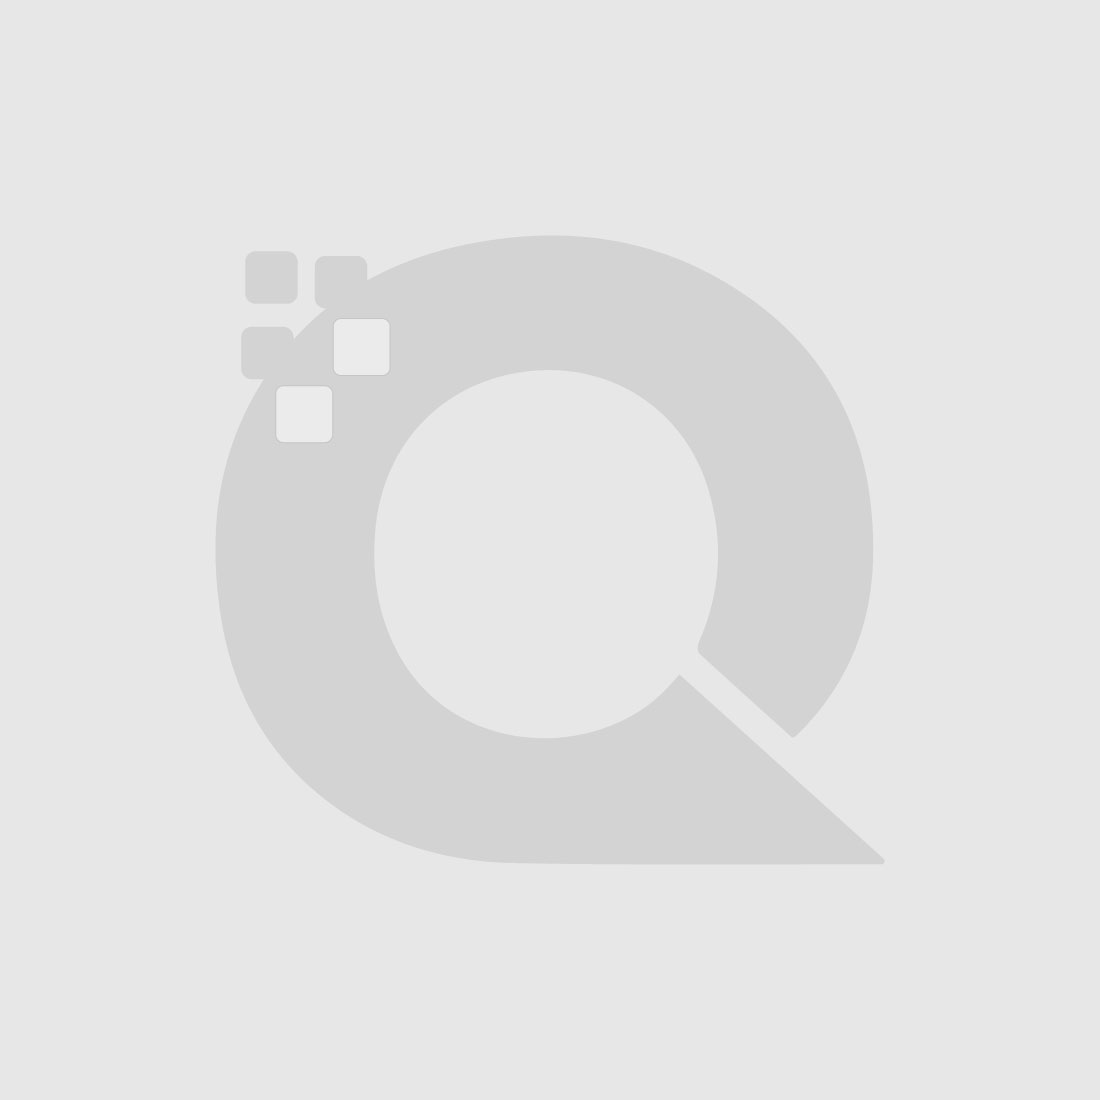 Guerniss Paris Velvet Matte Lipstick - GS023 - 3.5g